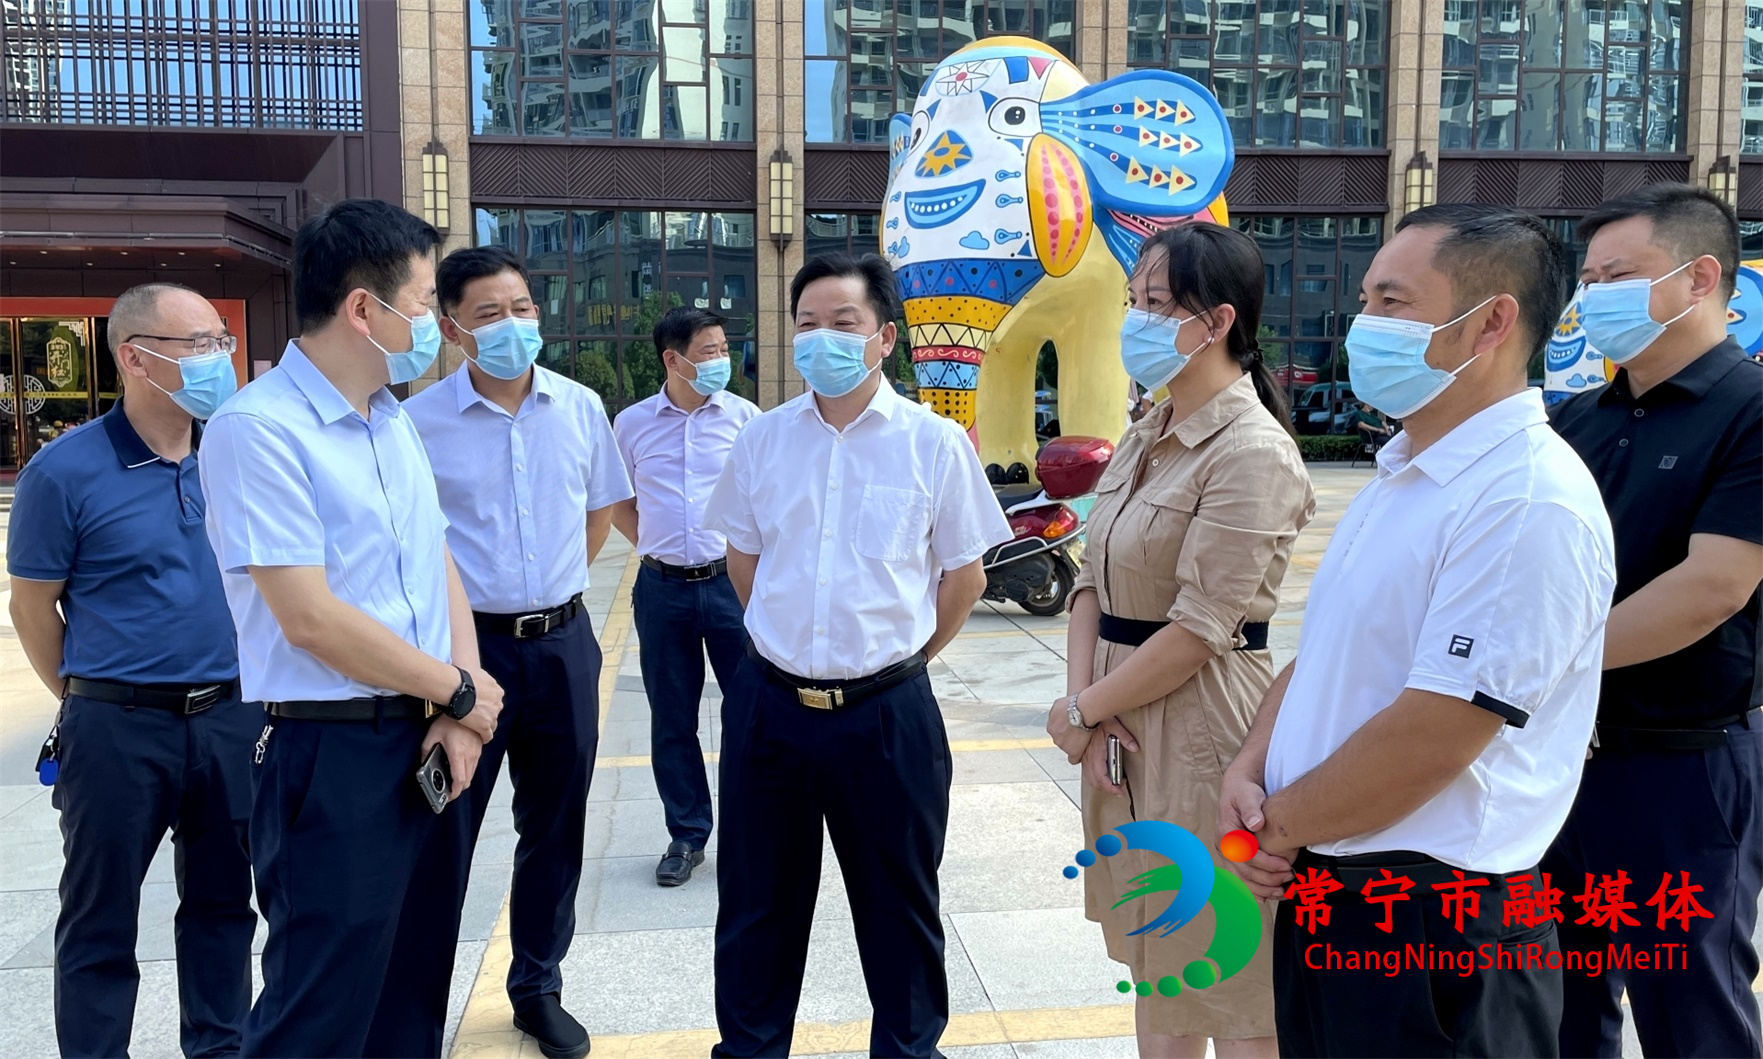 吳樂勝帶隊指導城區全員核酸檢測1.jpg